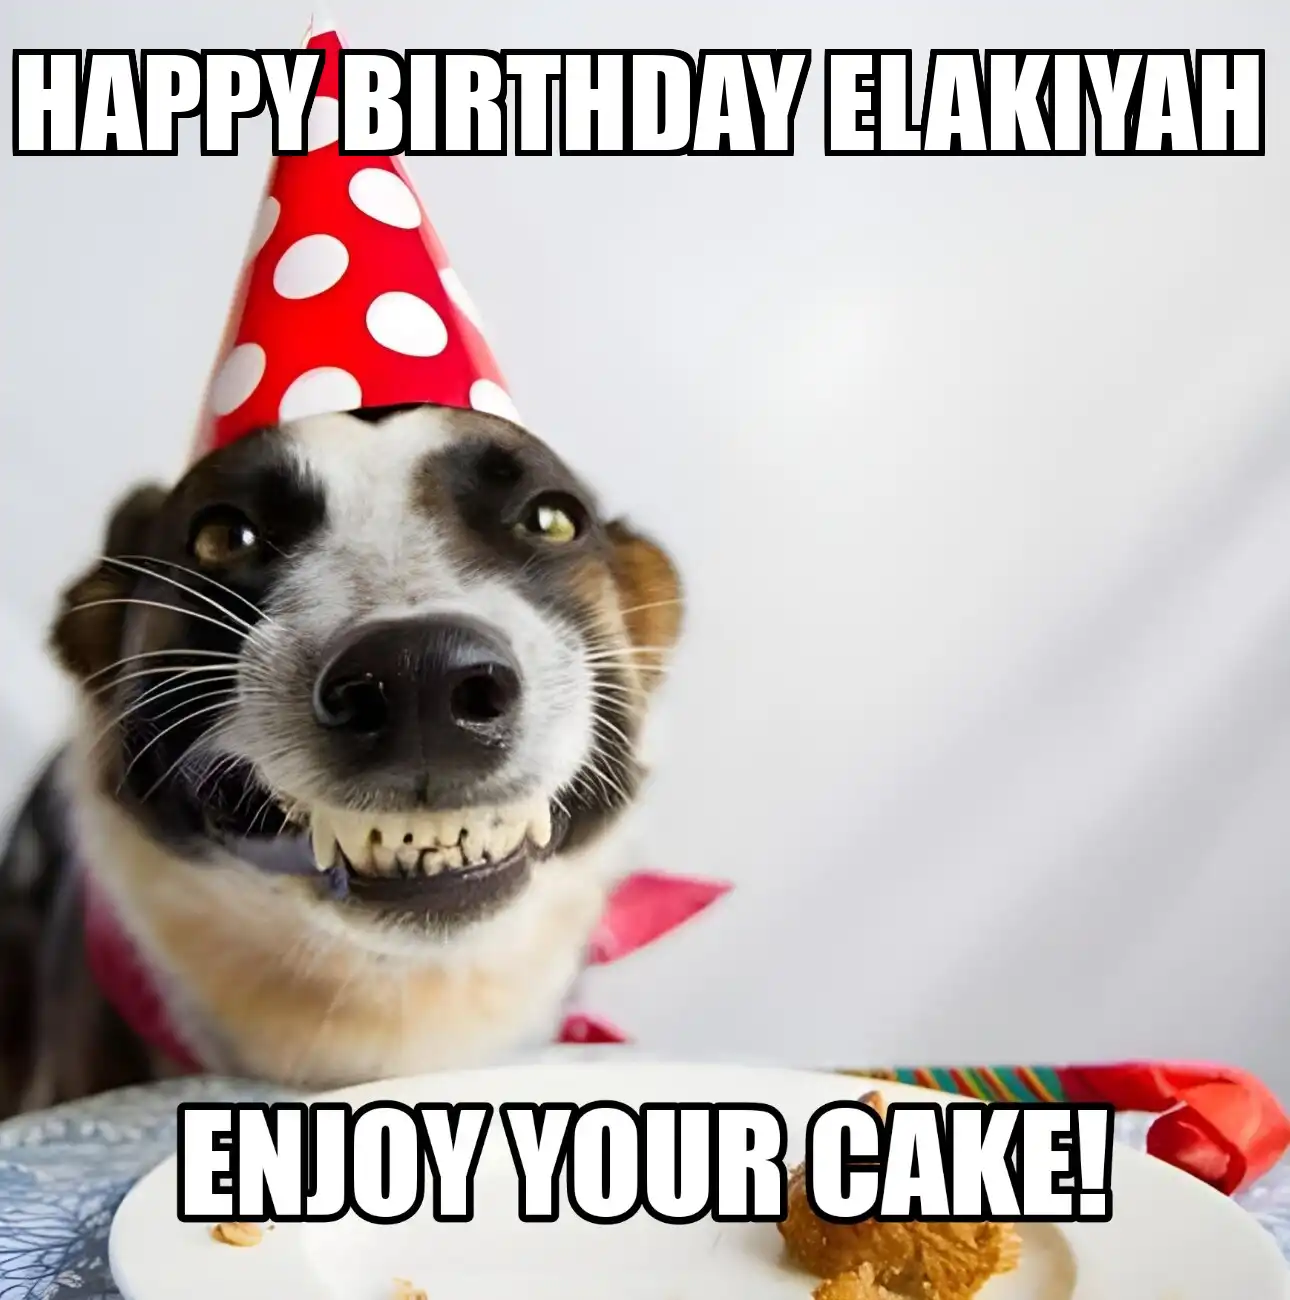 Happy Birthday Elakiyah Enjoy Your Cake Dog Meme